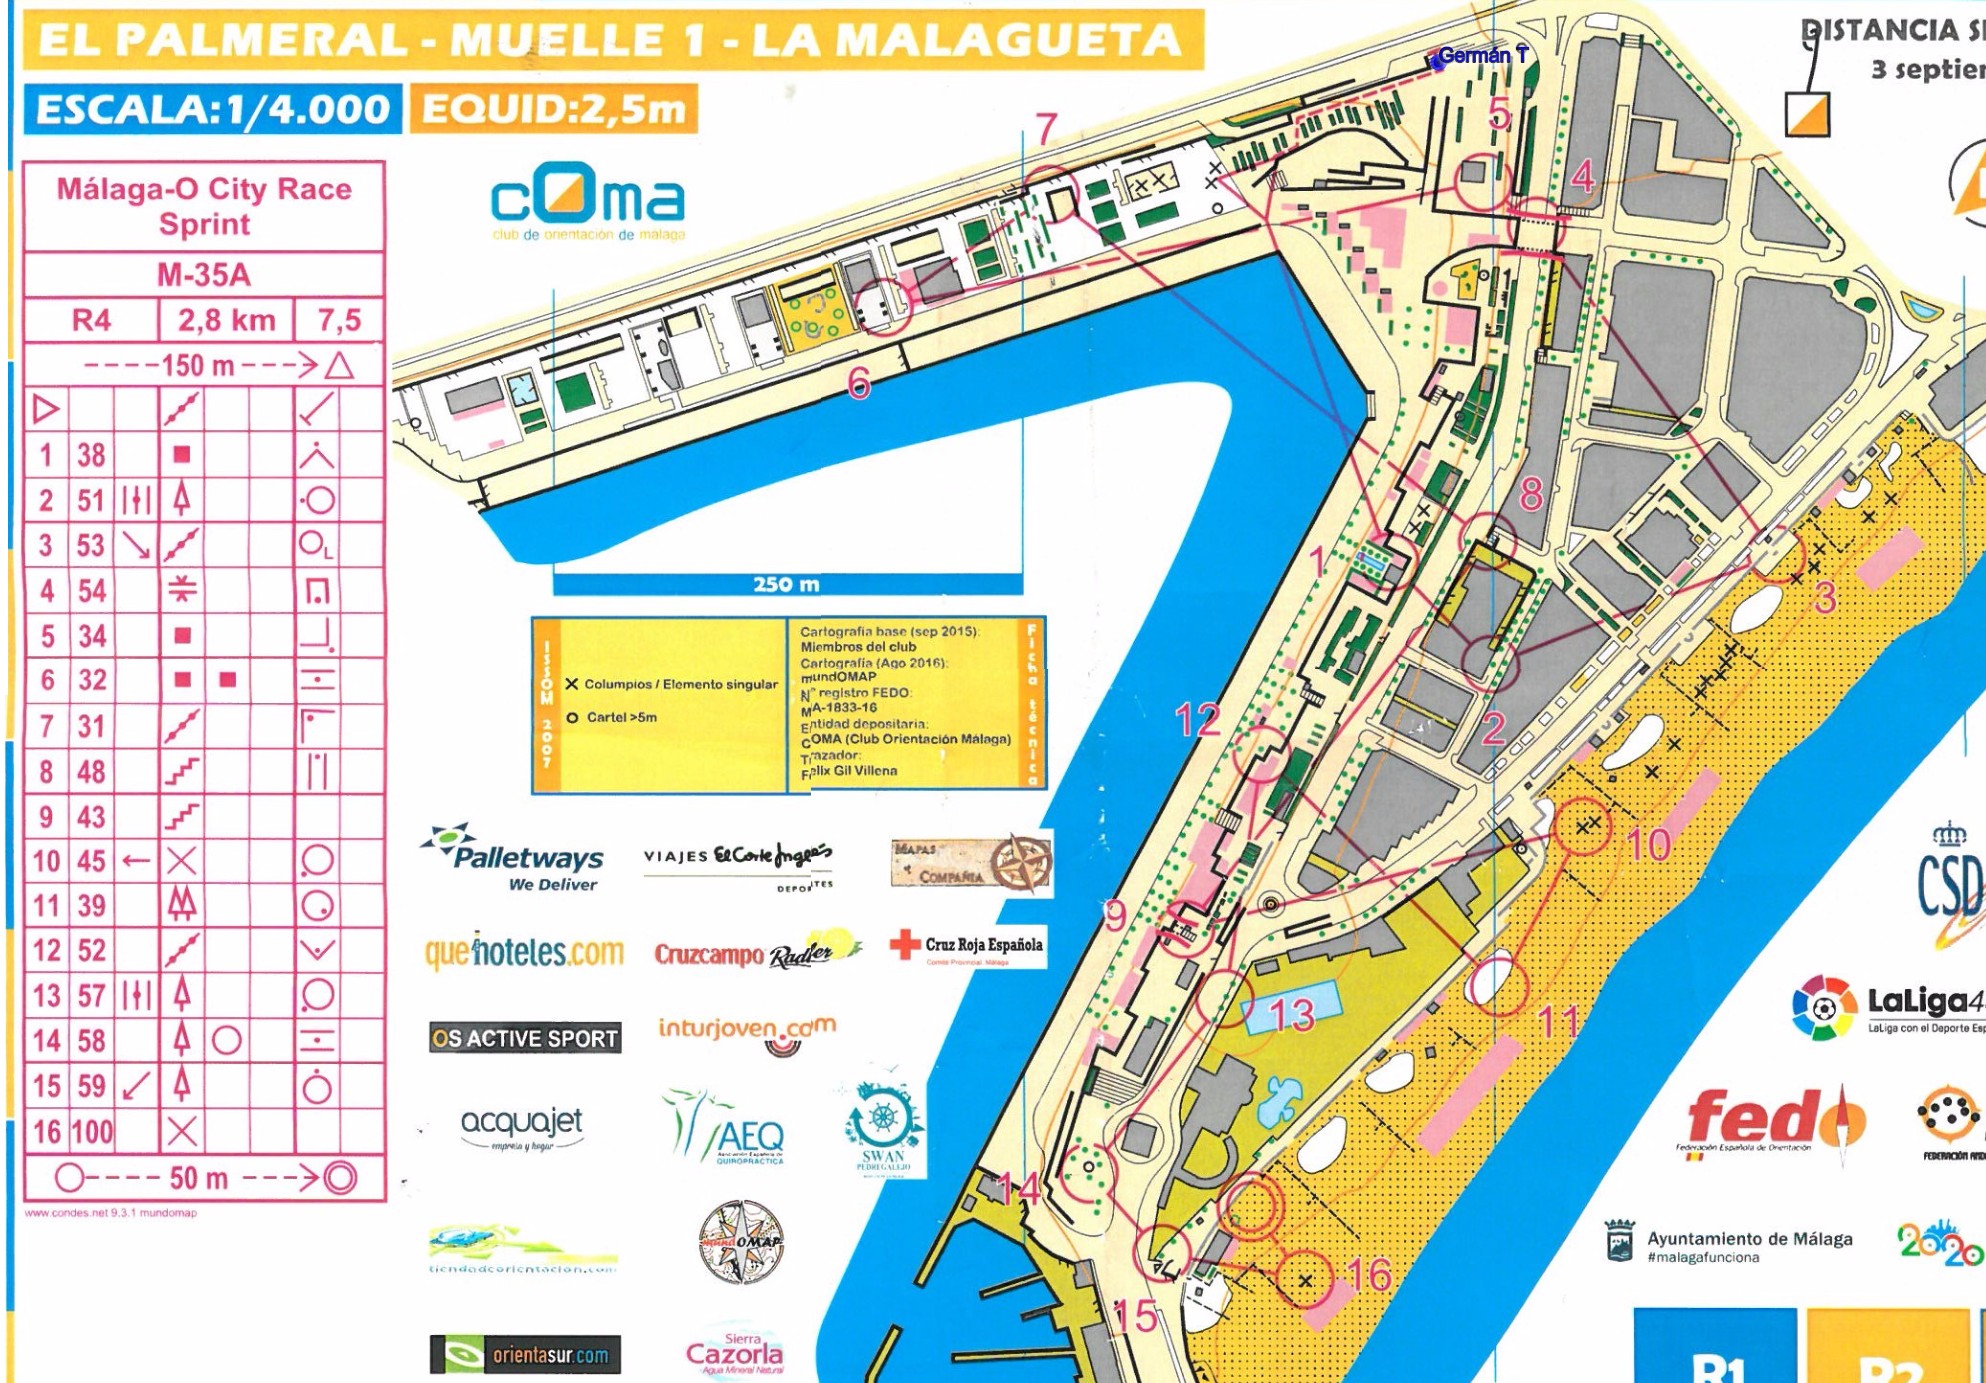 Malaga City Race - old route E2 (02.05.2017)